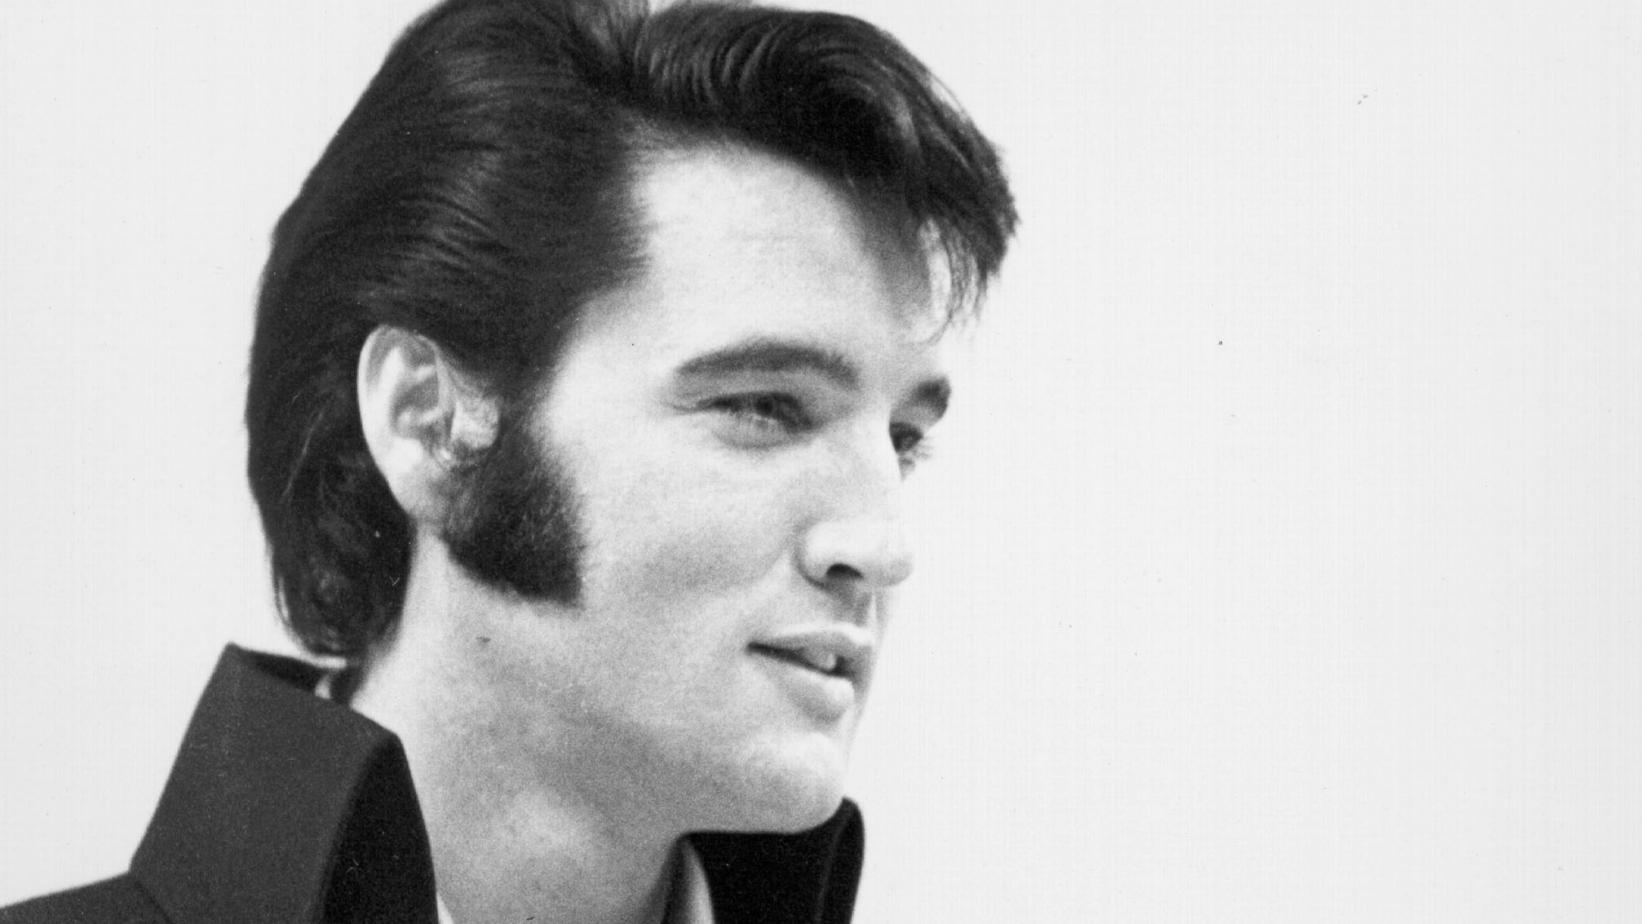 Who is Elvis Presley?